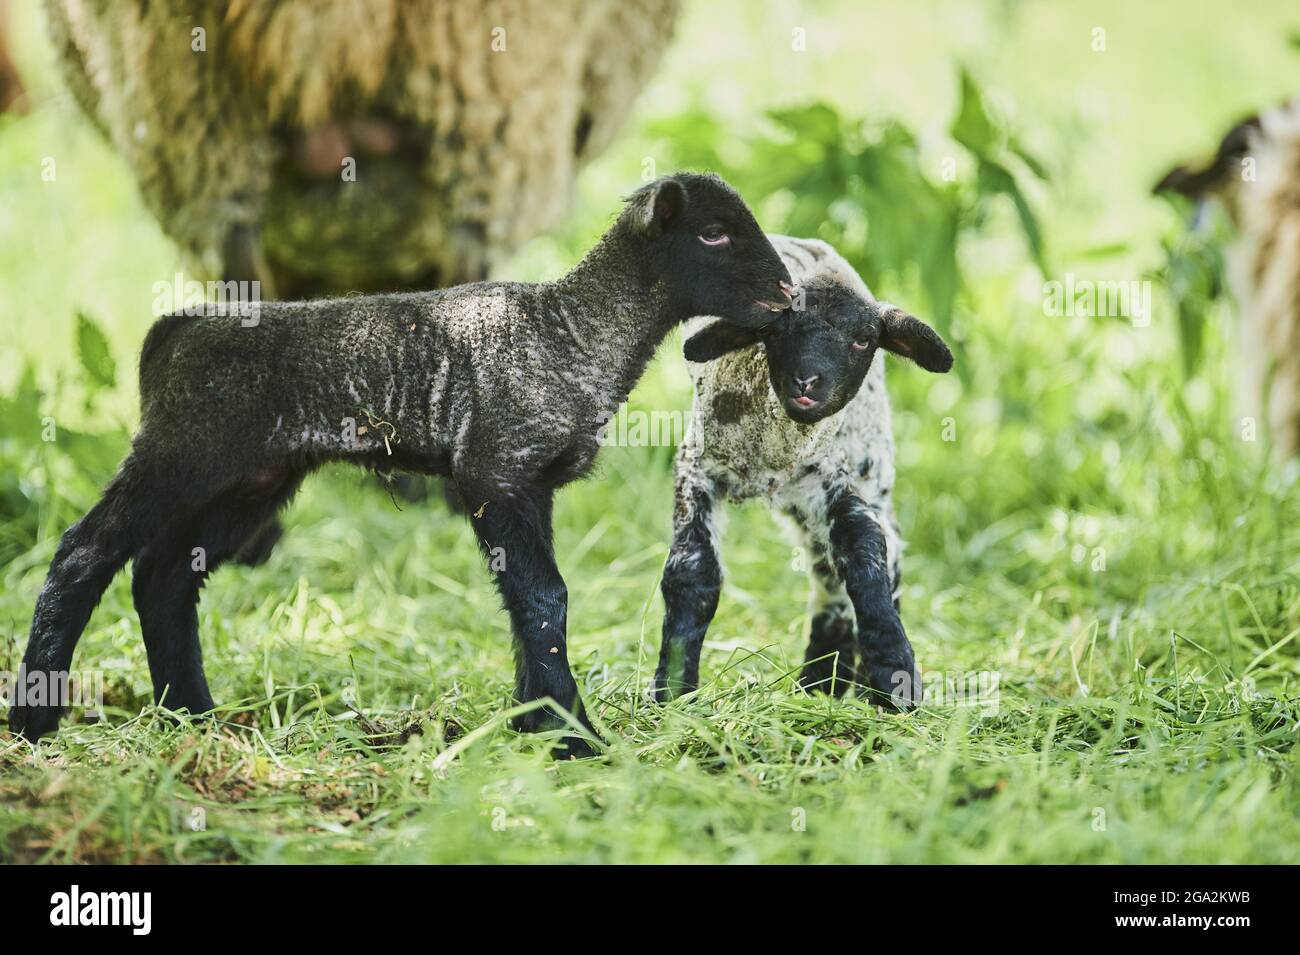 Due agnelli (Ovis aries), un agnello nero e un agnello bianco e nero macchiato, essendo amichevole mentre si levano in piedi in un campo con le pecore adulte sullo sfondo Foto Stock